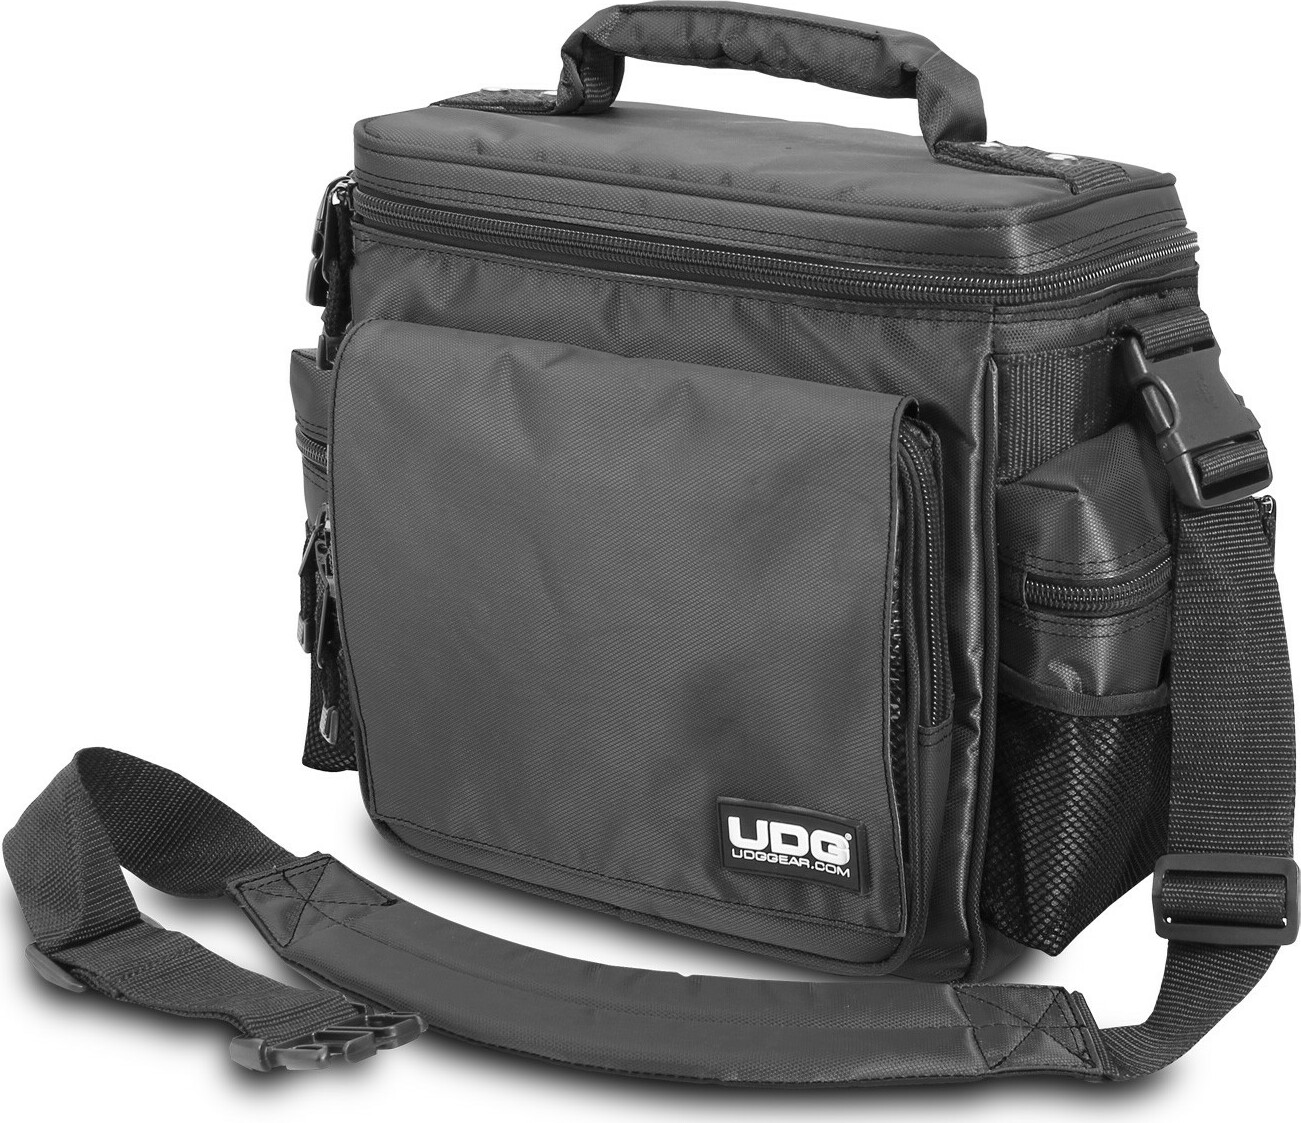 Udg Ultimate Slingbag Black Mk2 (without Cd Wallet 24) - DJ-Trolleytasche - Main picture